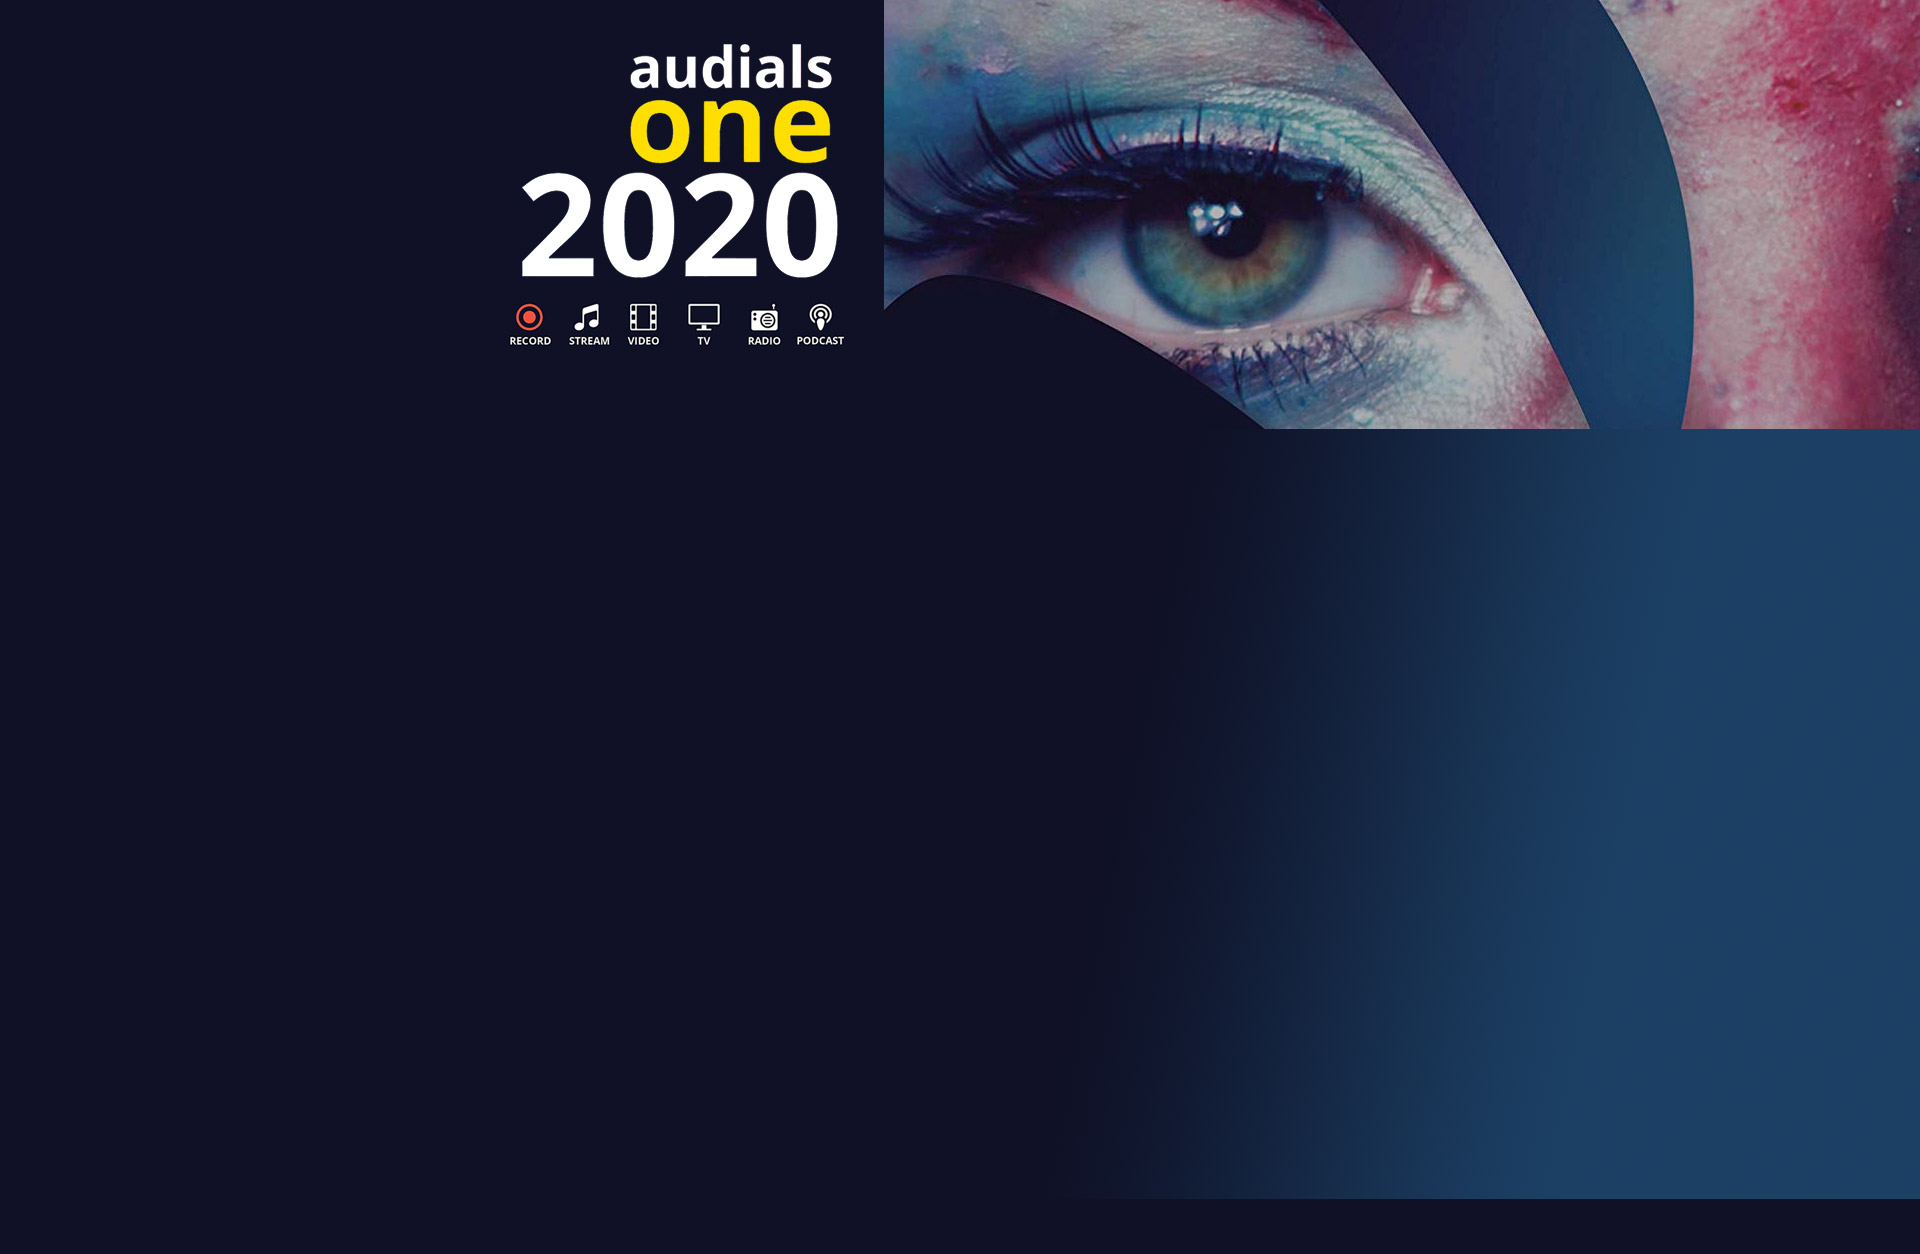 audials 2020